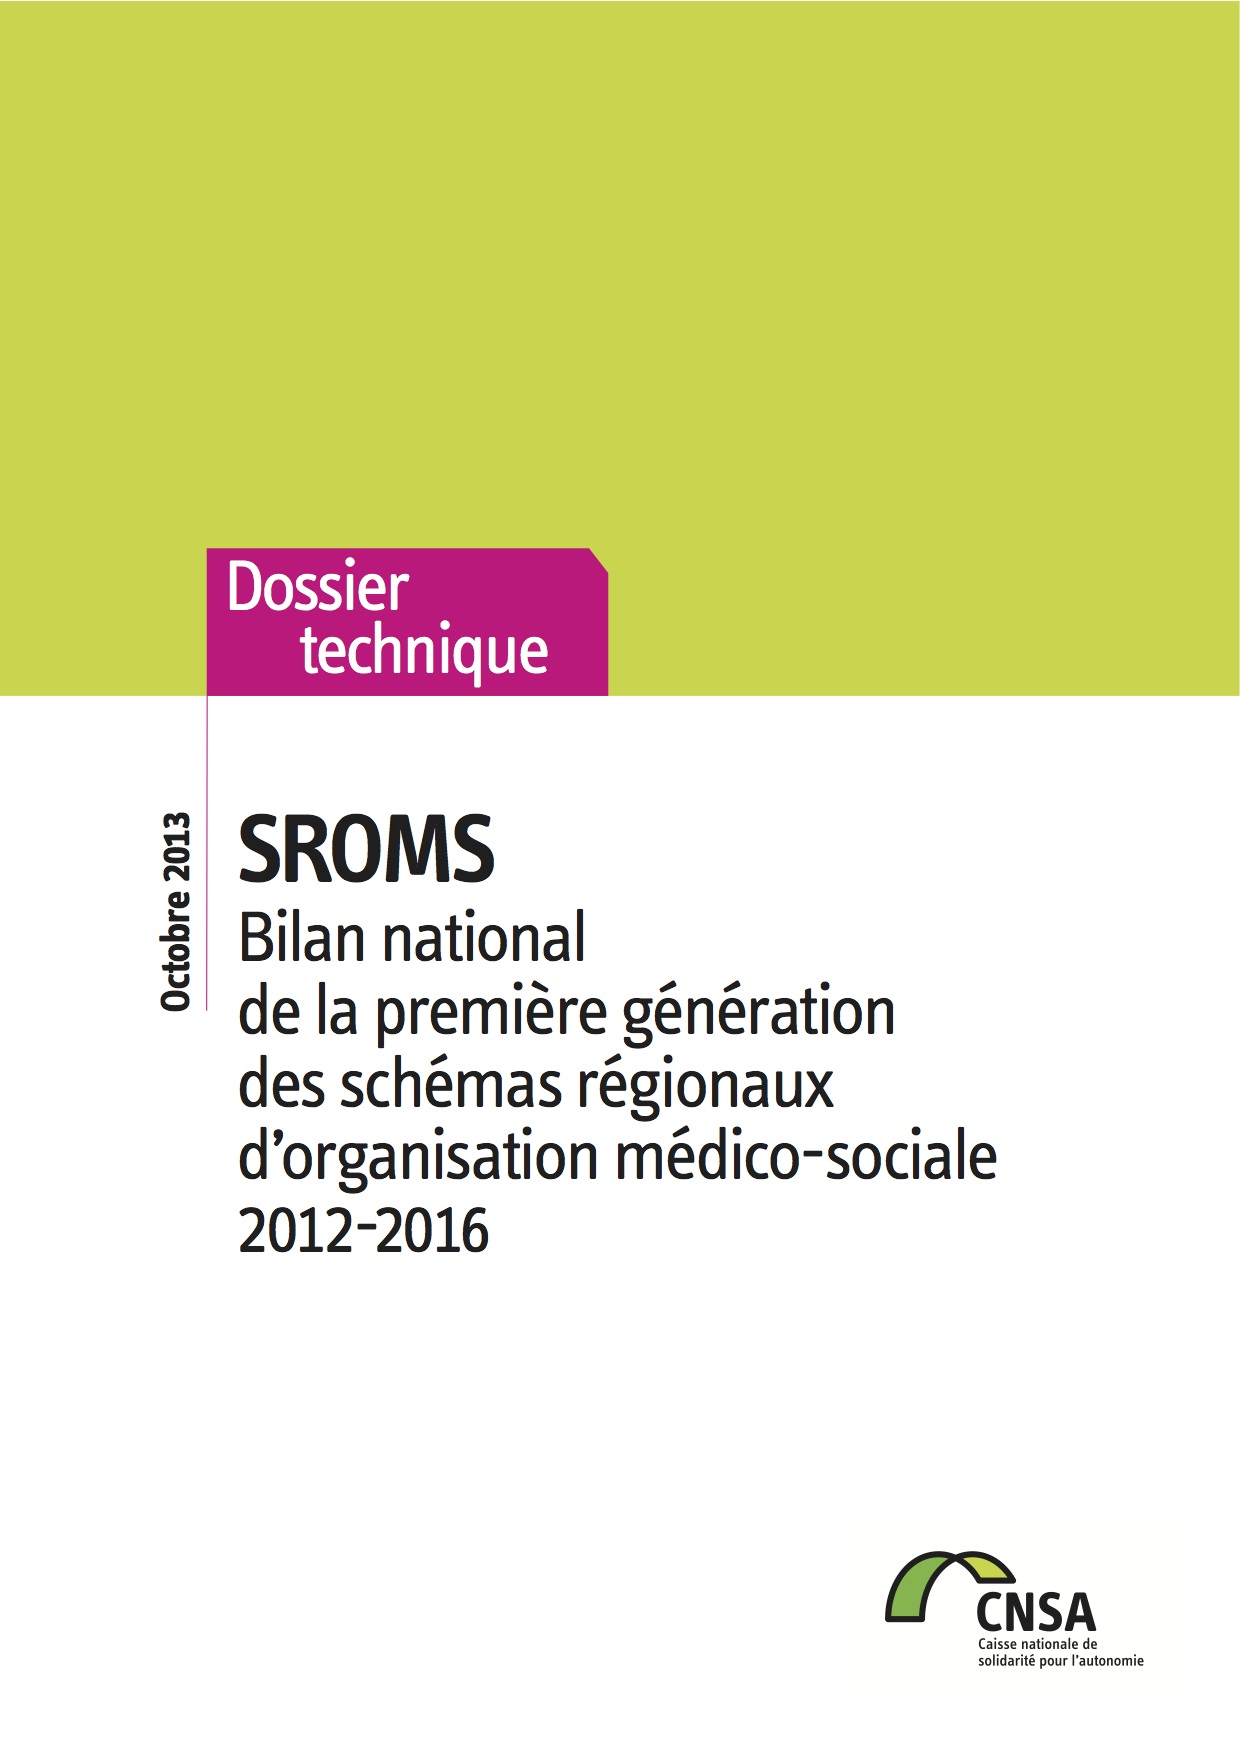 SROMS. Bilan national de la première génération des schémas régionaux d’organisation médico-sociale.  (PDF, 703.04 Ko)